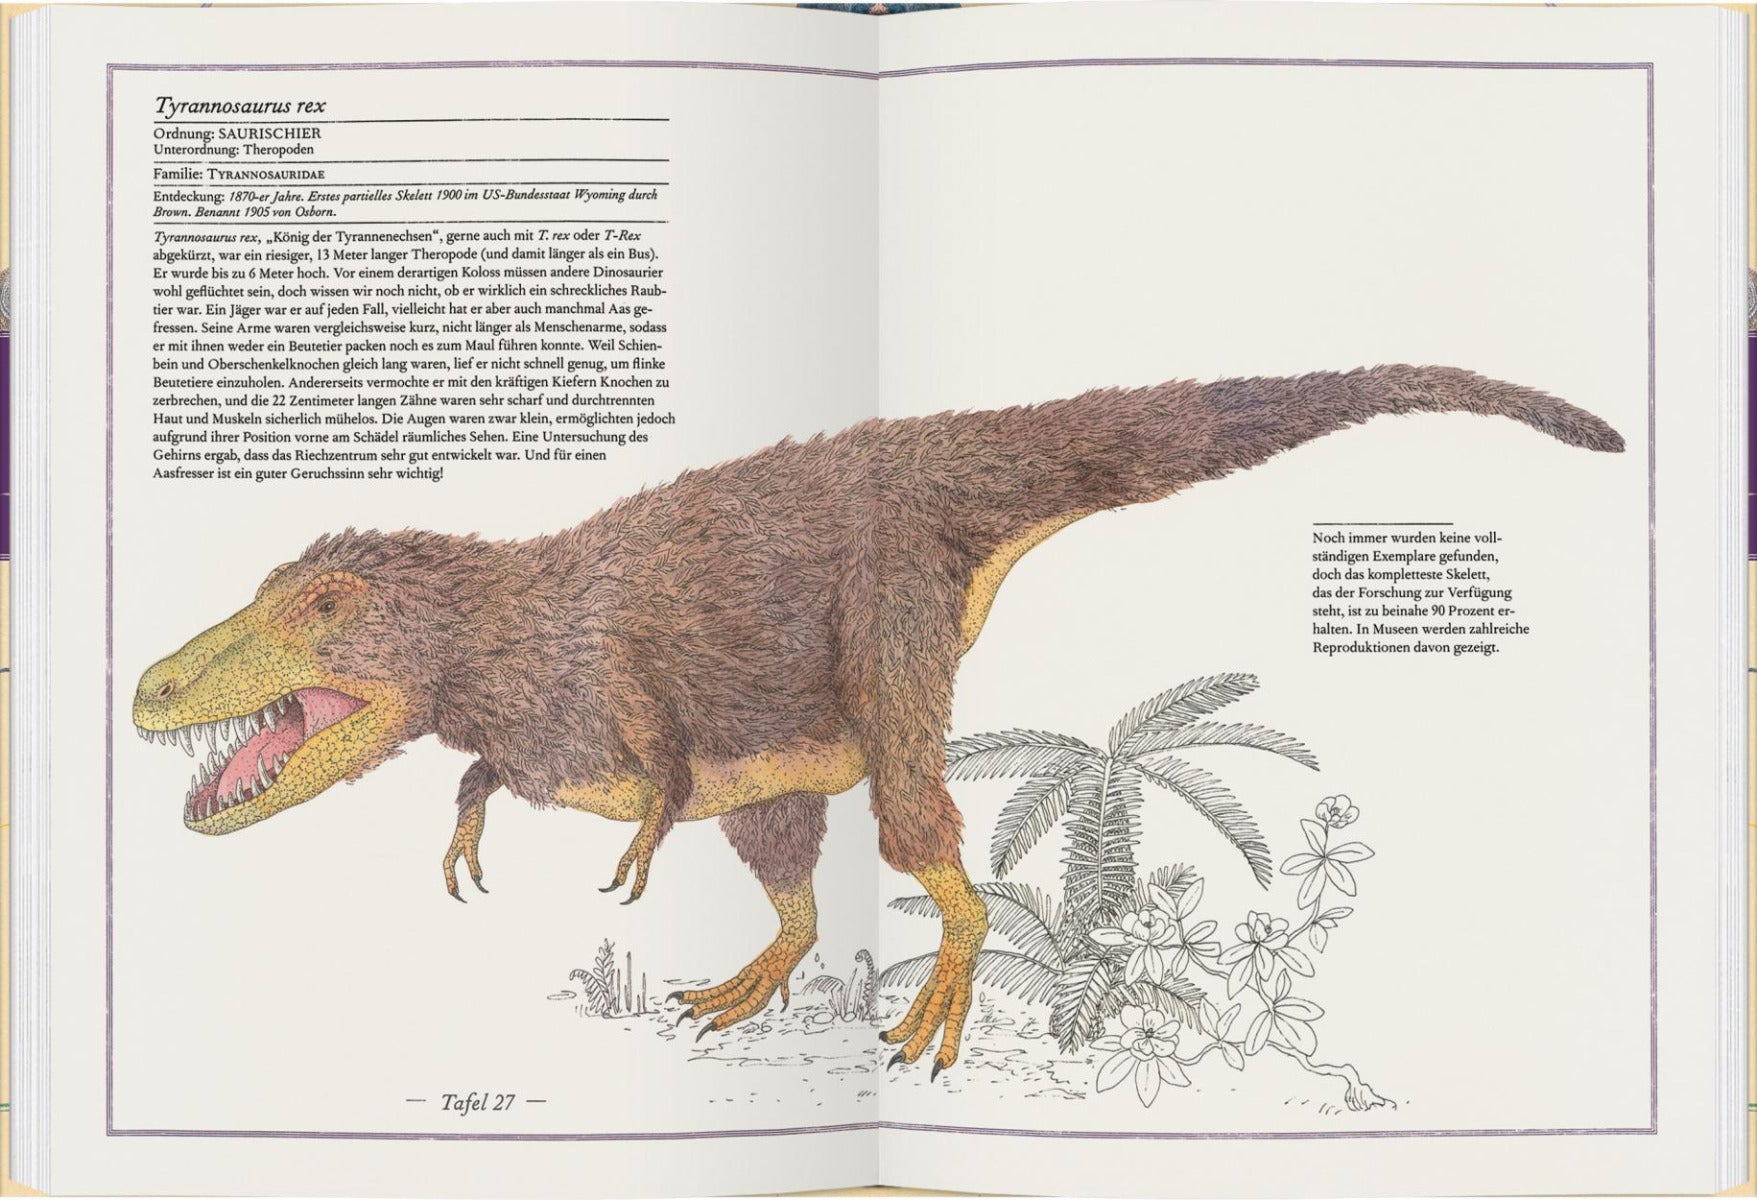 Triceratops, T-Rex, Supersaurus - Die Welt der Dinosaurier